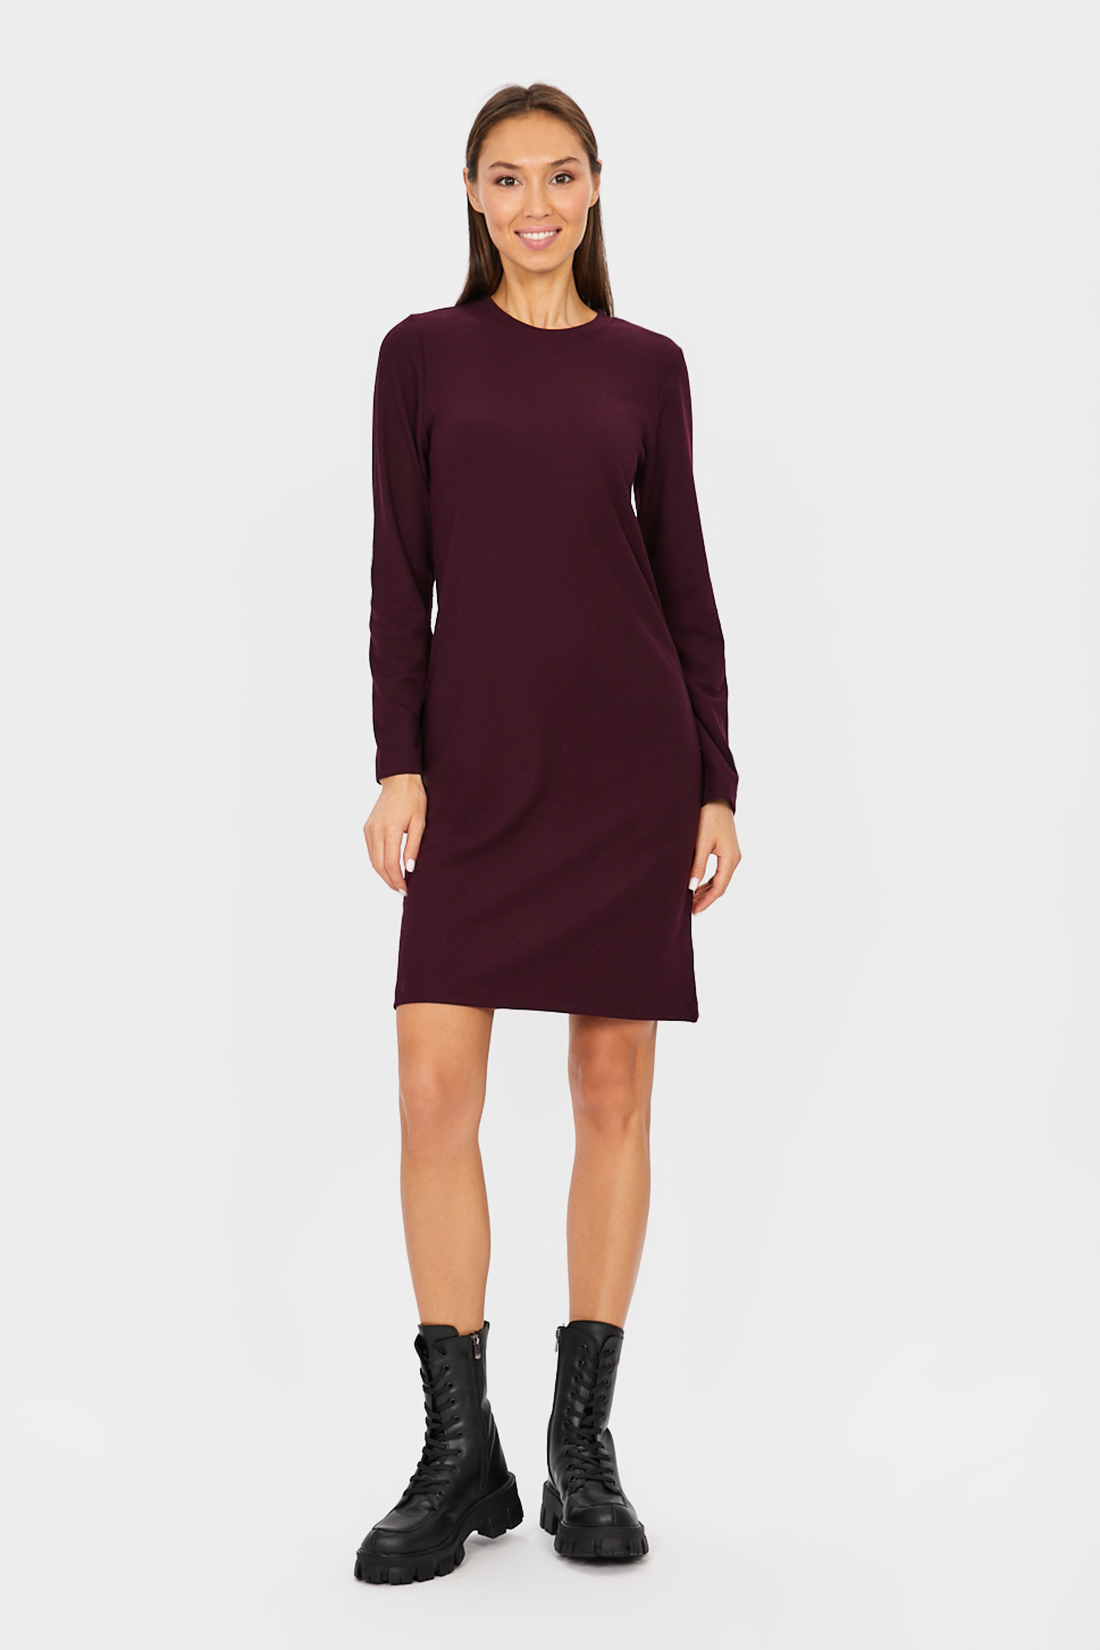 Платье (арт. baon B451506), размер L, цвет фиолетовый Платье (арт. baon B451506) - фото 1